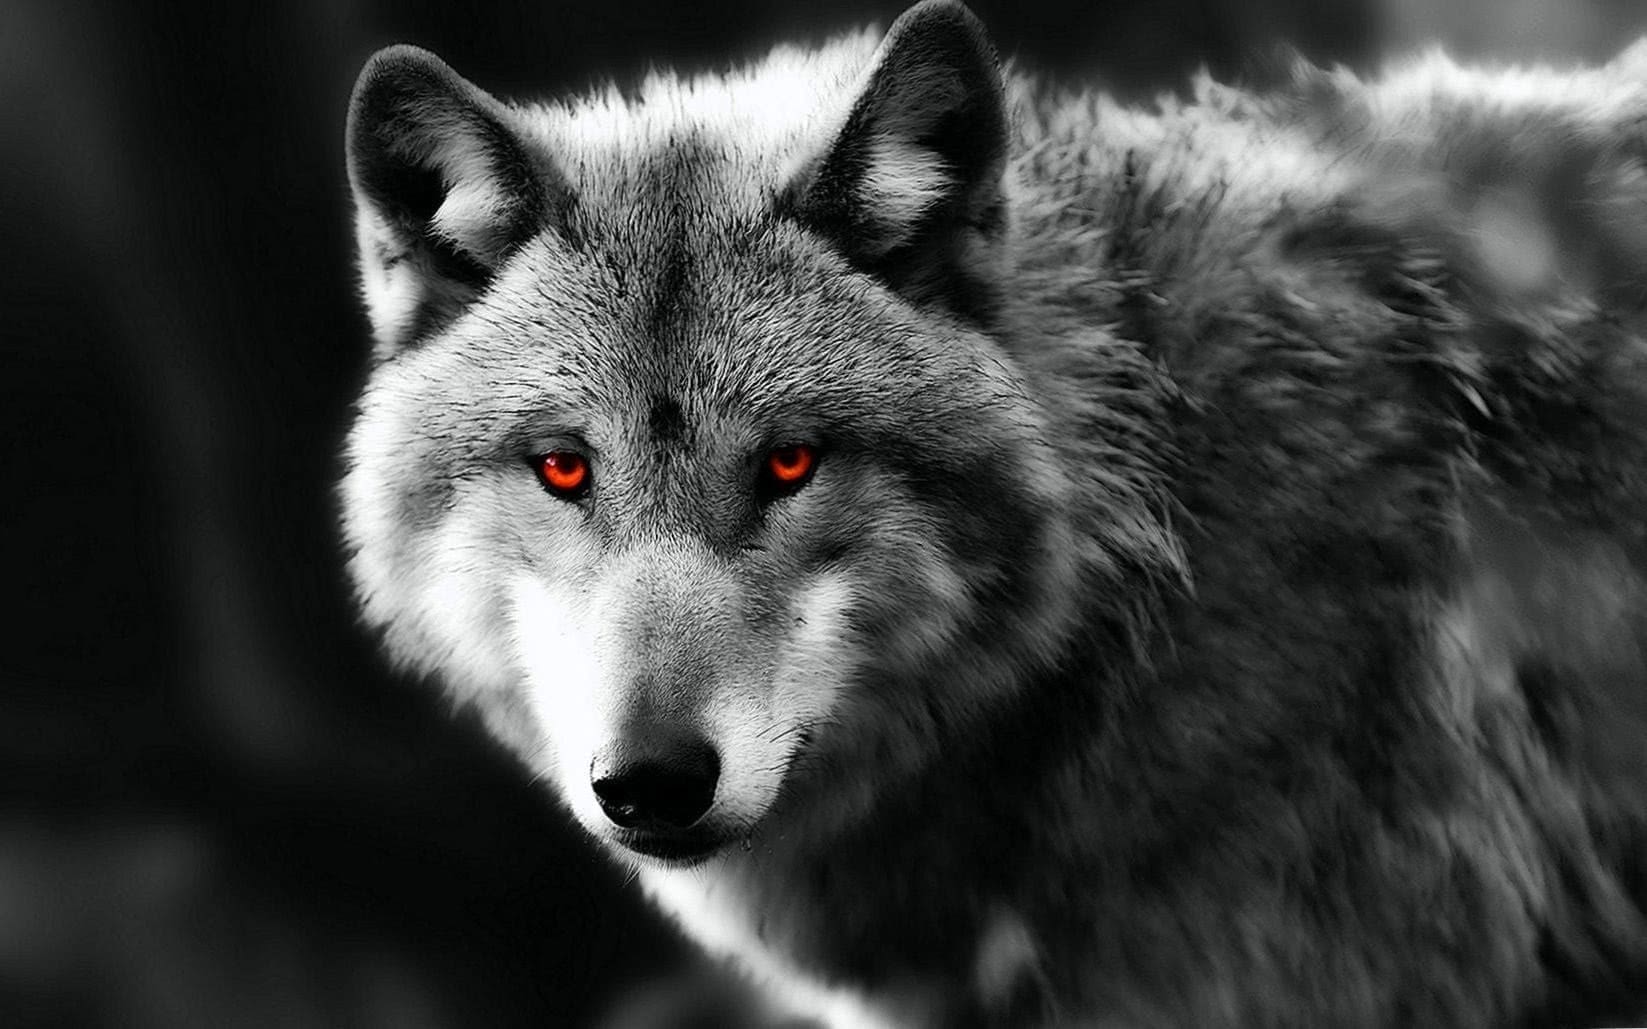 دانلود عکس گرگ چشم قرمز در جنگل با کیفیت بالا